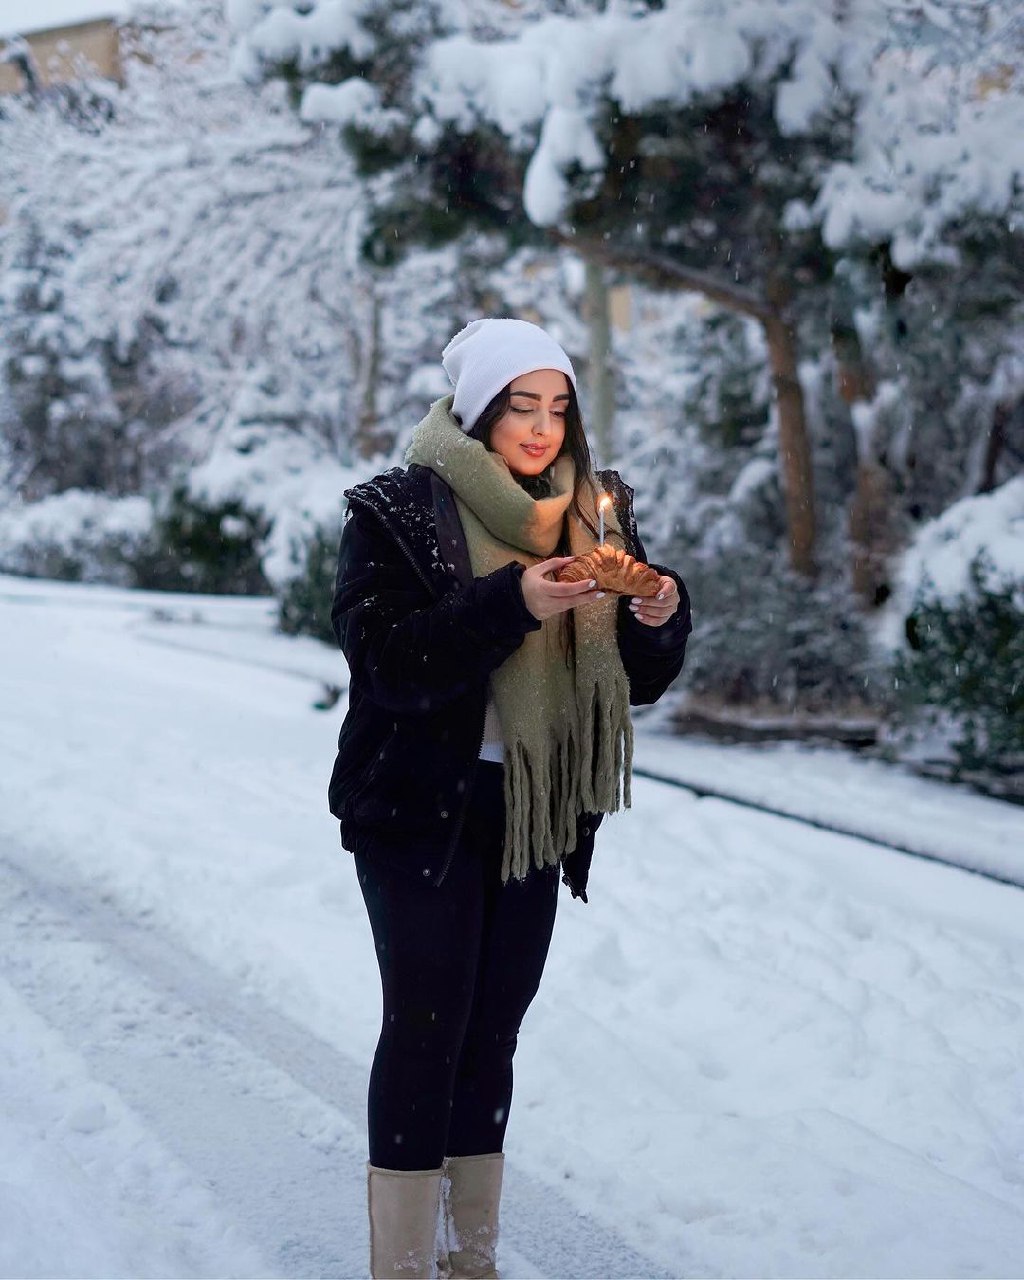 ایده های عکاسی در برف به سبک بلاگرها